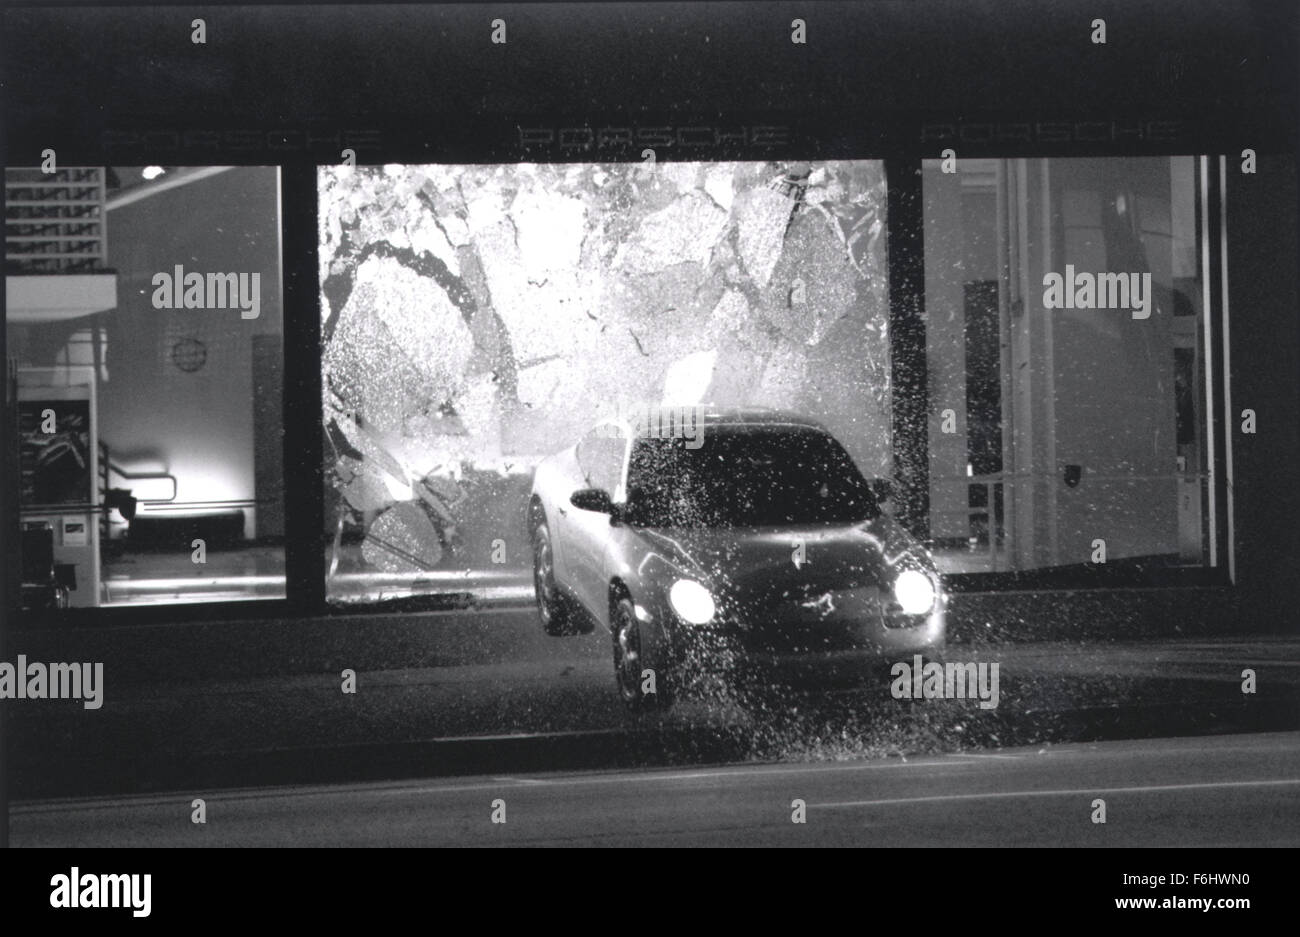 Jul 23, 2002; Hollywood, CA, Stati Uniti d'America; una vettura vola attraverso una finestra come uno stunt per il film 'Andato in 60 secondi.". (Credito immagine: Auto immagini) Foto Stock